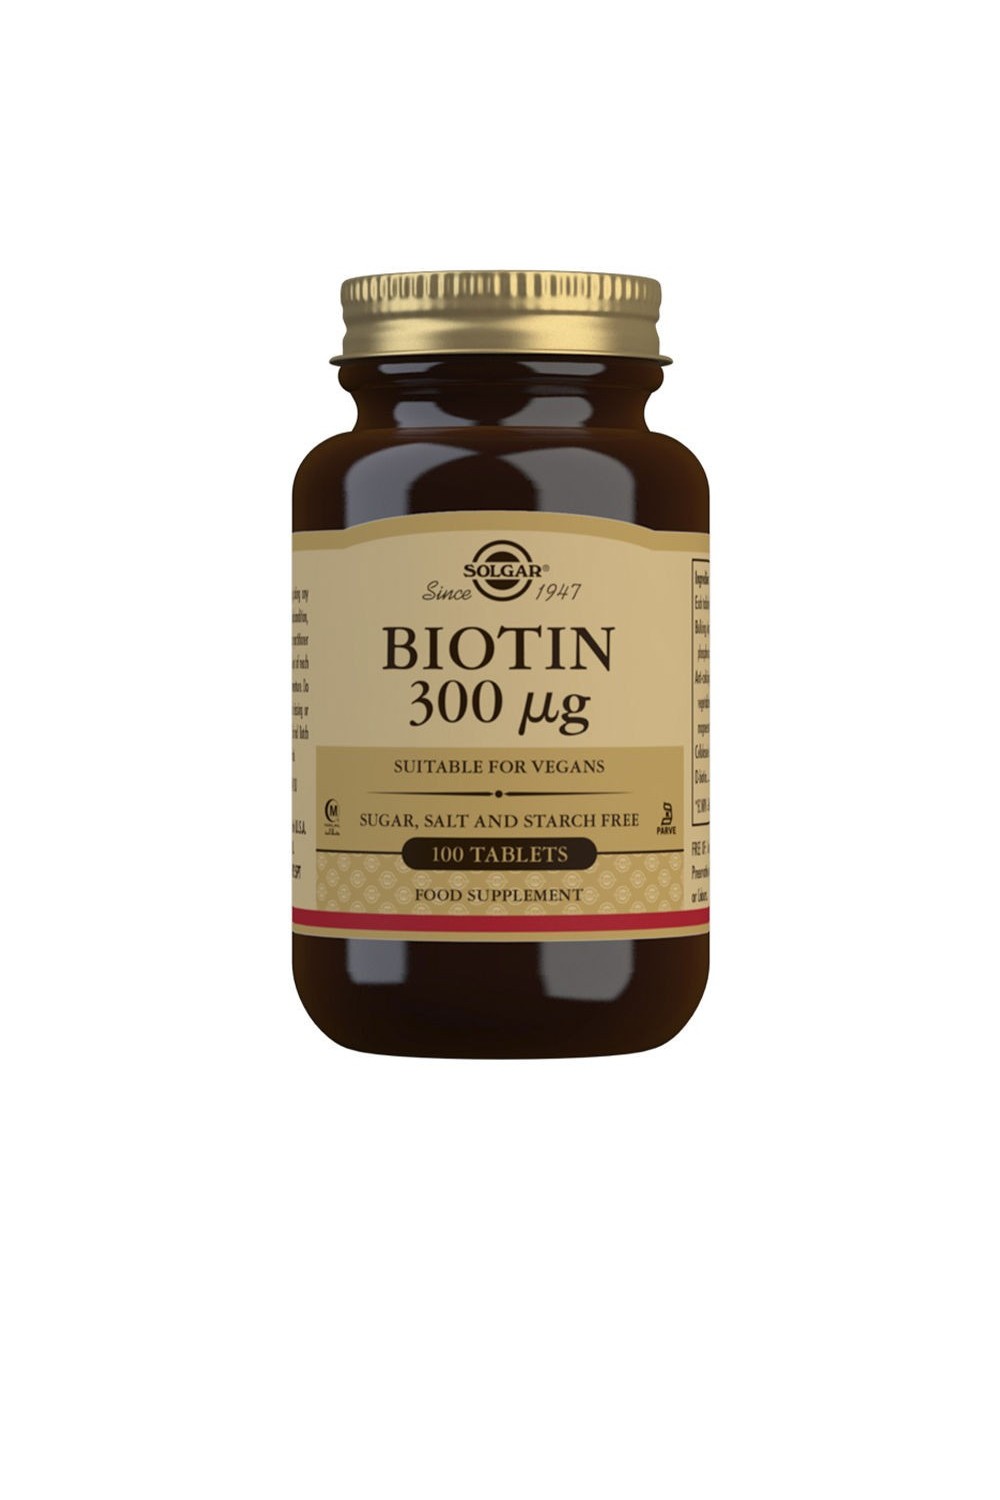 Solgar Biotin 300 µg Tablets - Pack of 100